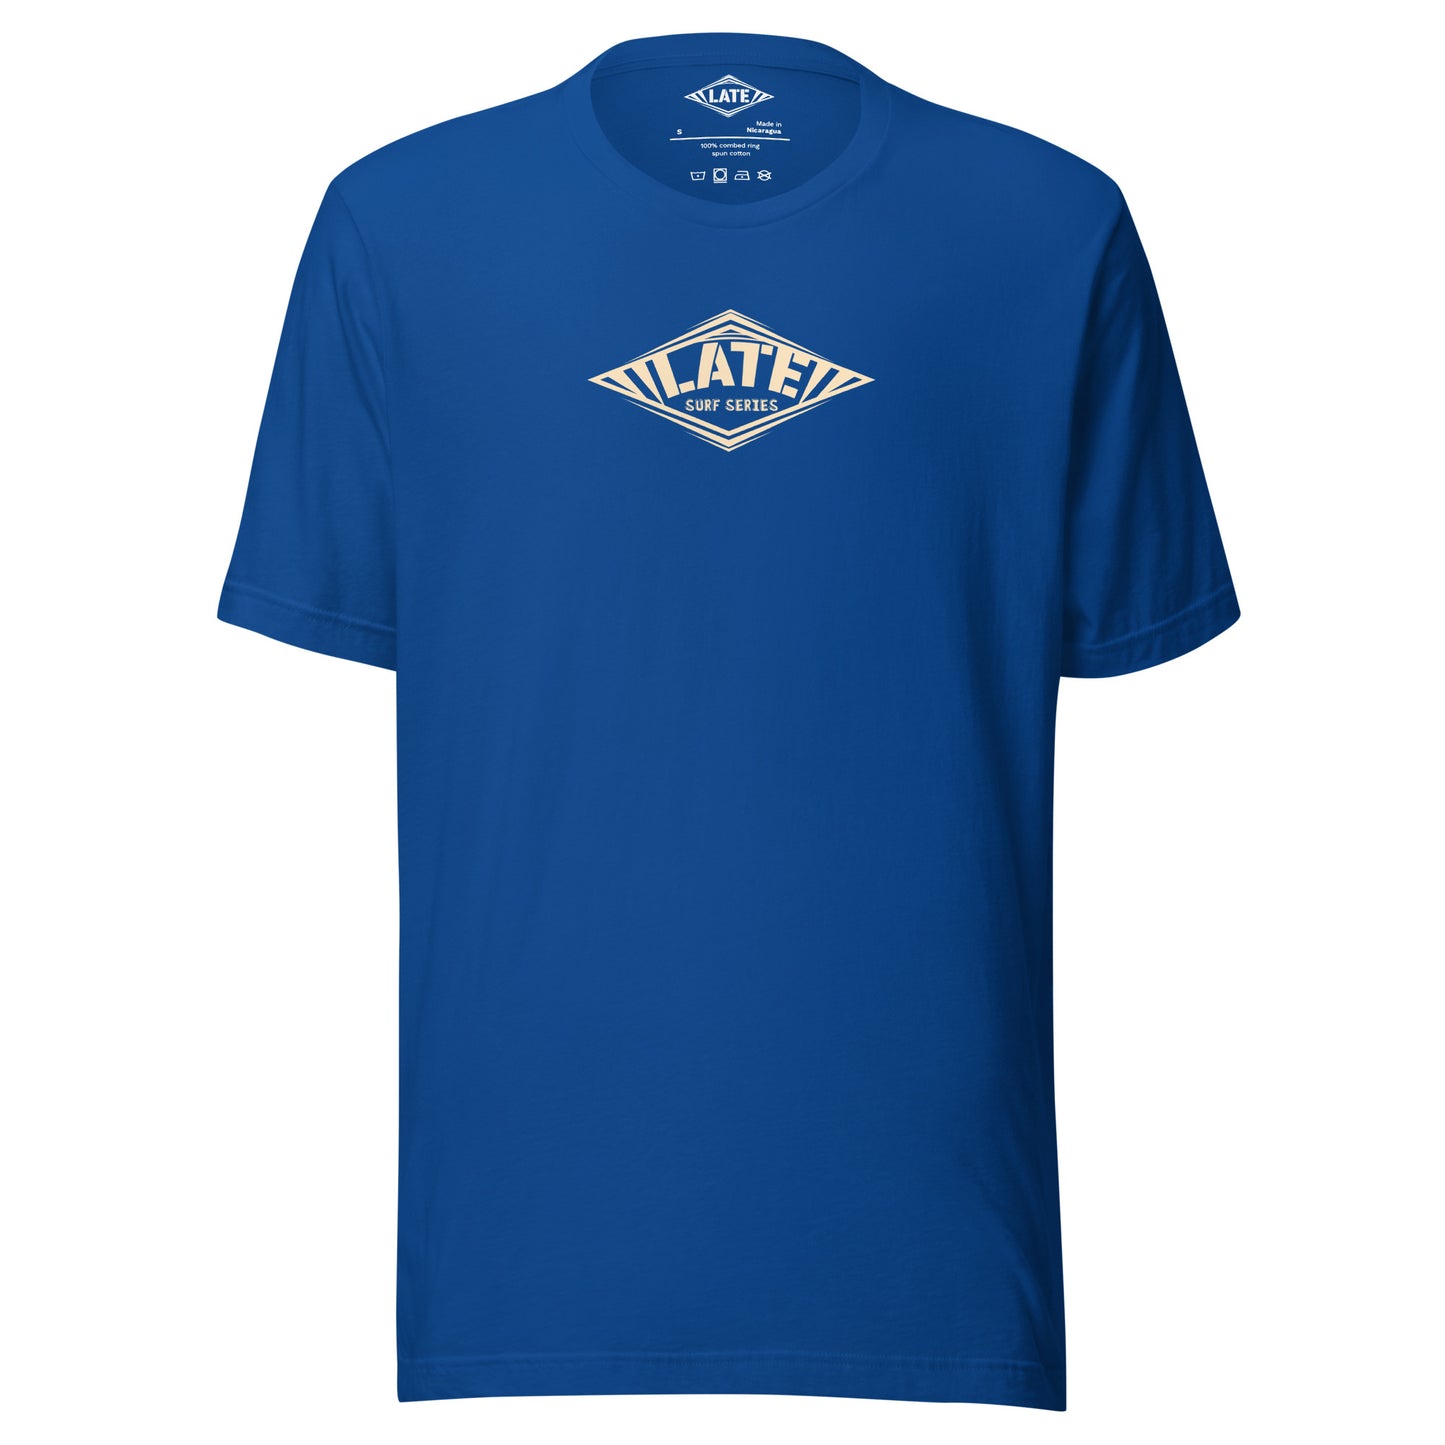 T-Shirt Take On The Elements style hurley texte surf series, et logo Late tshirt de face couleur bleu